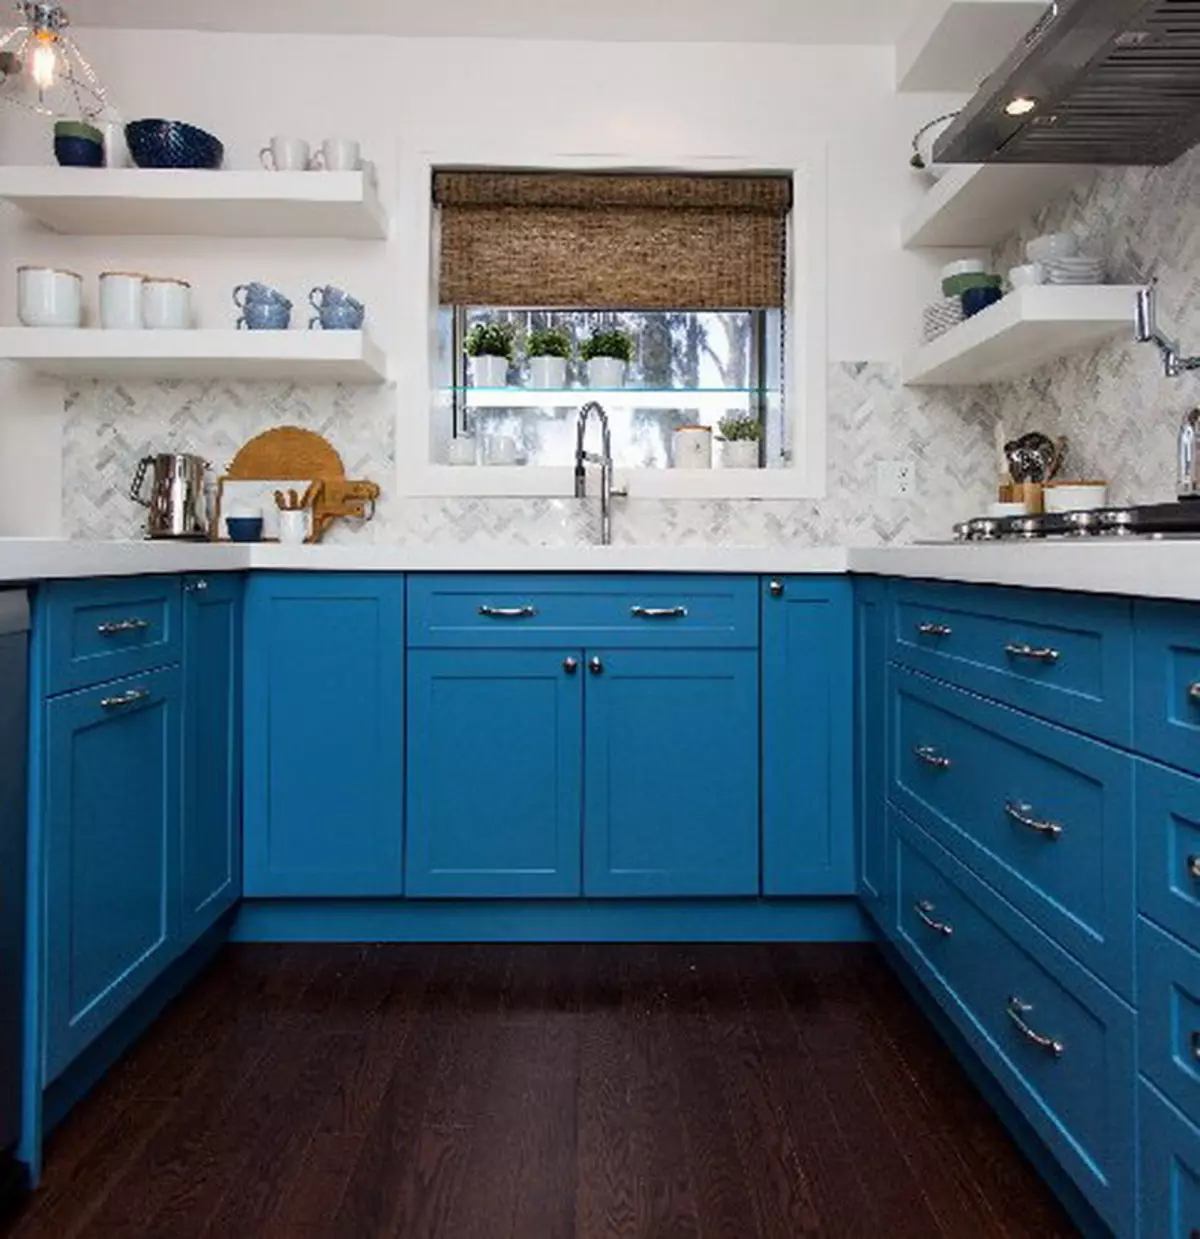 Cucina bianca-blu (64 foto): Caratteristiche dell'auricolare della cucina in colore bianco-blu per la cucina Interior design, accenti sulle pareti in colori simili 9393_33